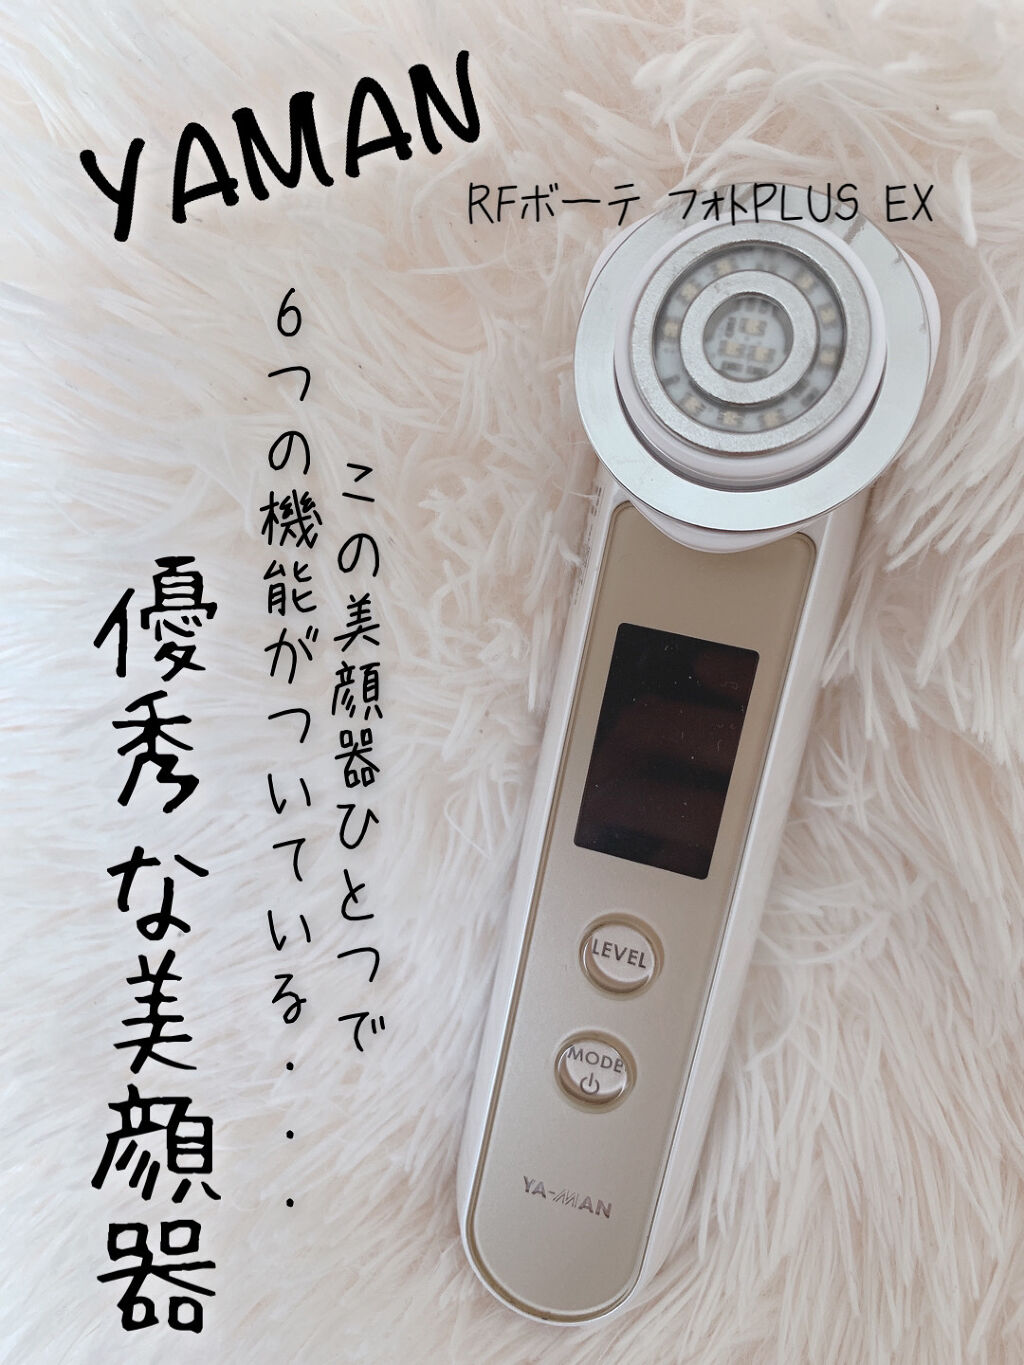 国産】 YA-MAN ヤーマン フォトプラスエクストラHRF-20 美容機器 - www